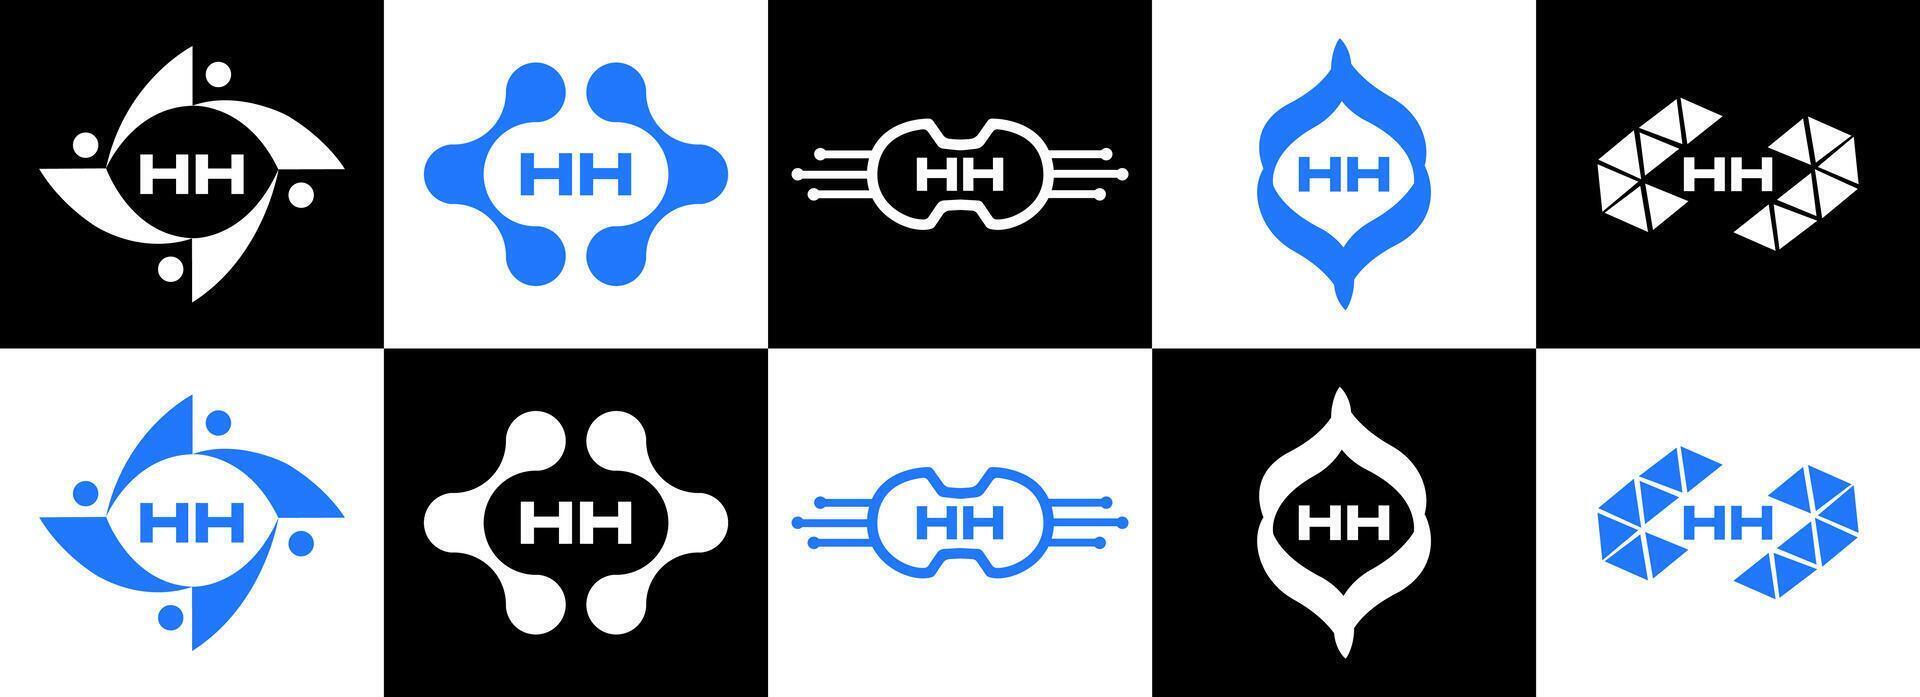 HH logo. H H design. WhitE HH letter. HH, H H letter logo SET design. Initial letter HH linked circle uppercase monogram logo. H H letter logo SET vector design. HH letter logo design. pro vector